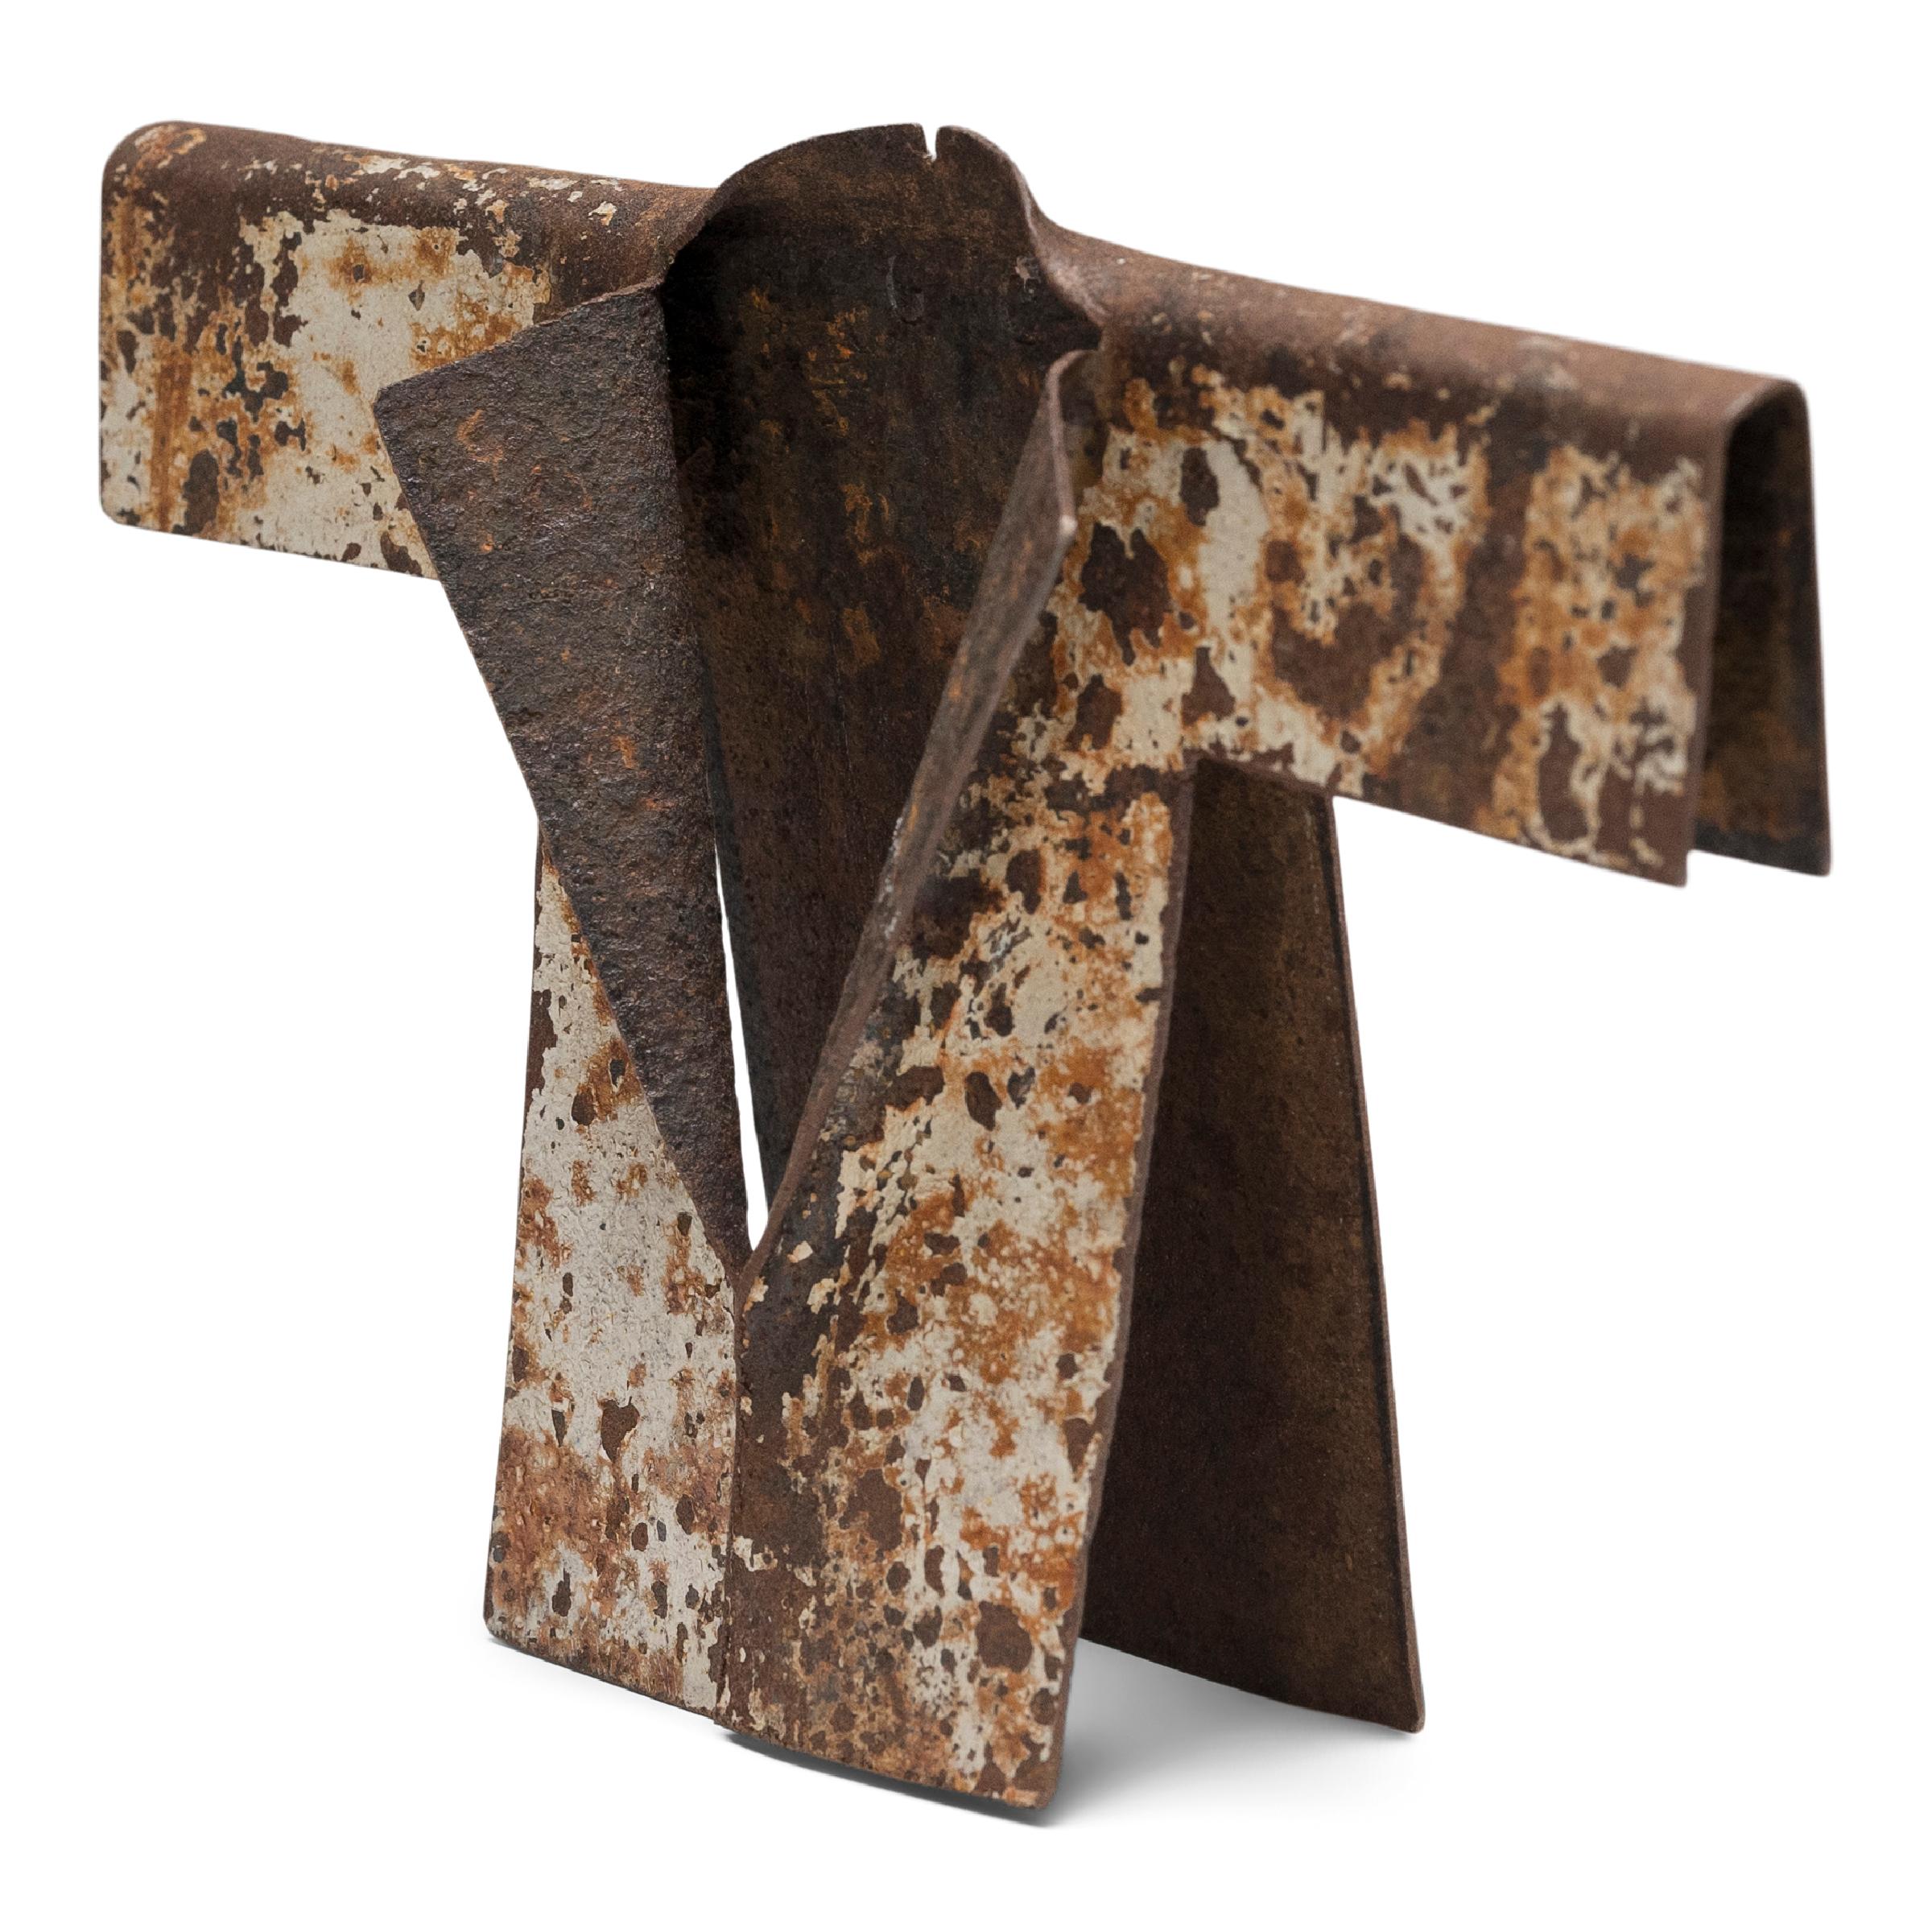 C'est en découvrant un tambour en acier usé par les intempéries et déformé pour ressembler à la manche d'un vêtement que l'artiste Gordon Chandler a eu l'idée de se lancer dans une série de sculptures en kimono formées à partir de déchets